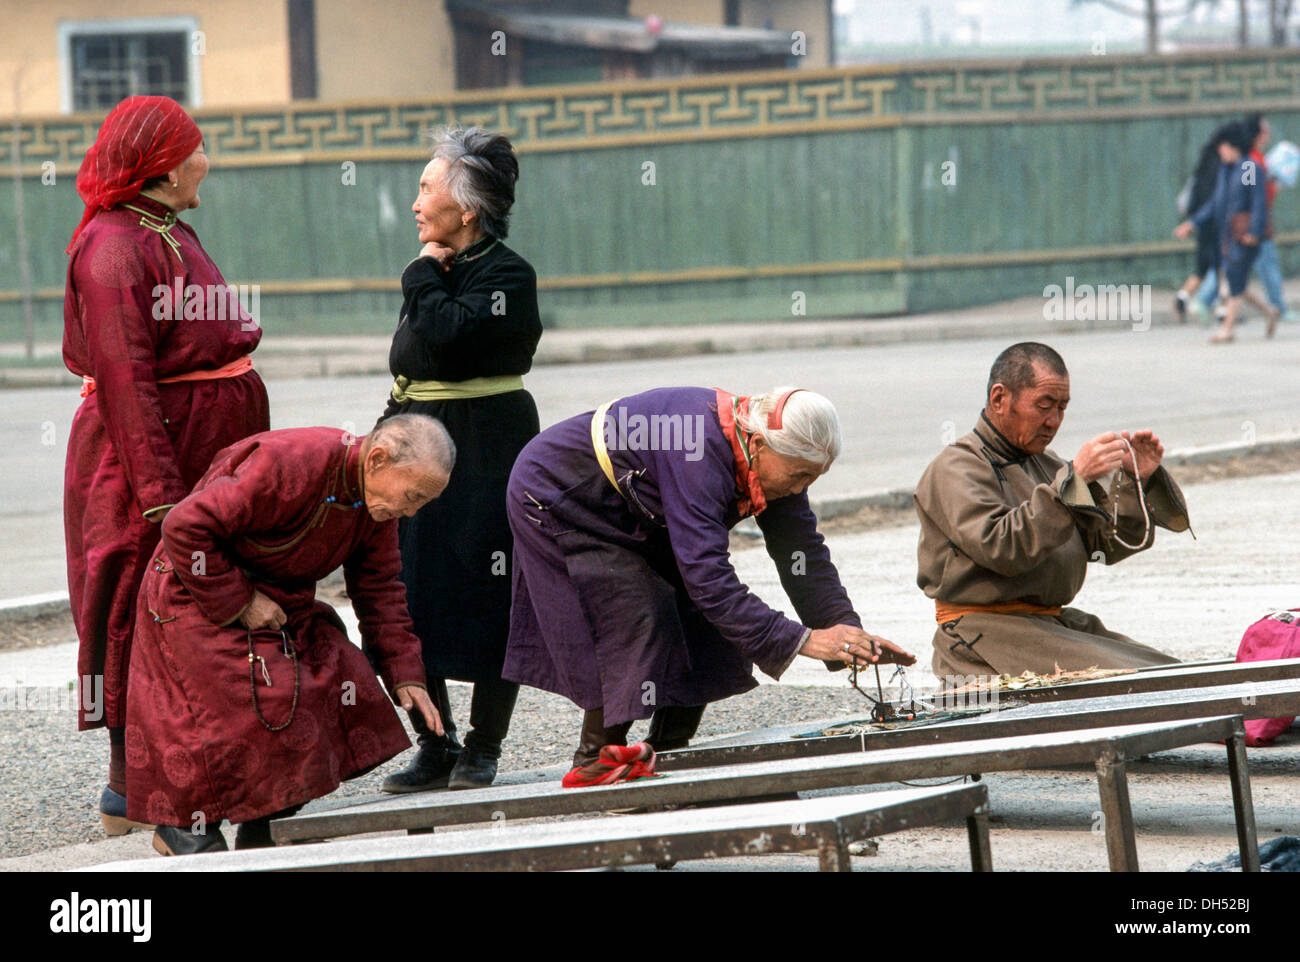 Les bouddhistes se prosternent devant Gangdan monastère à Ulaanbaatar Mongolie Banque D'Images